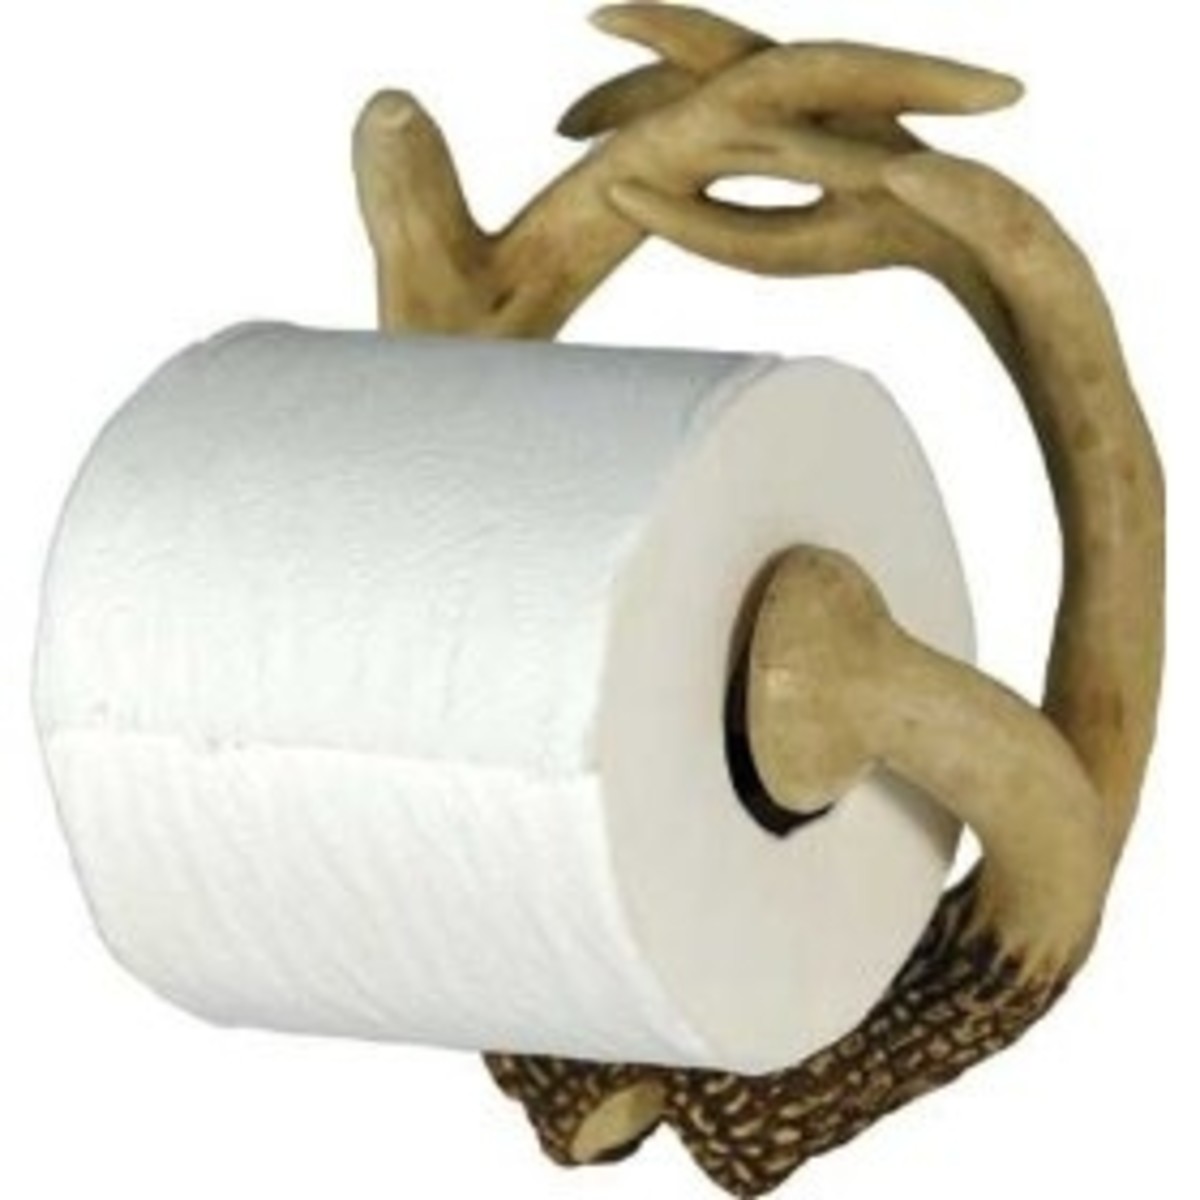 River's Edge Deer Antler Novelty Toilet Paper Holder